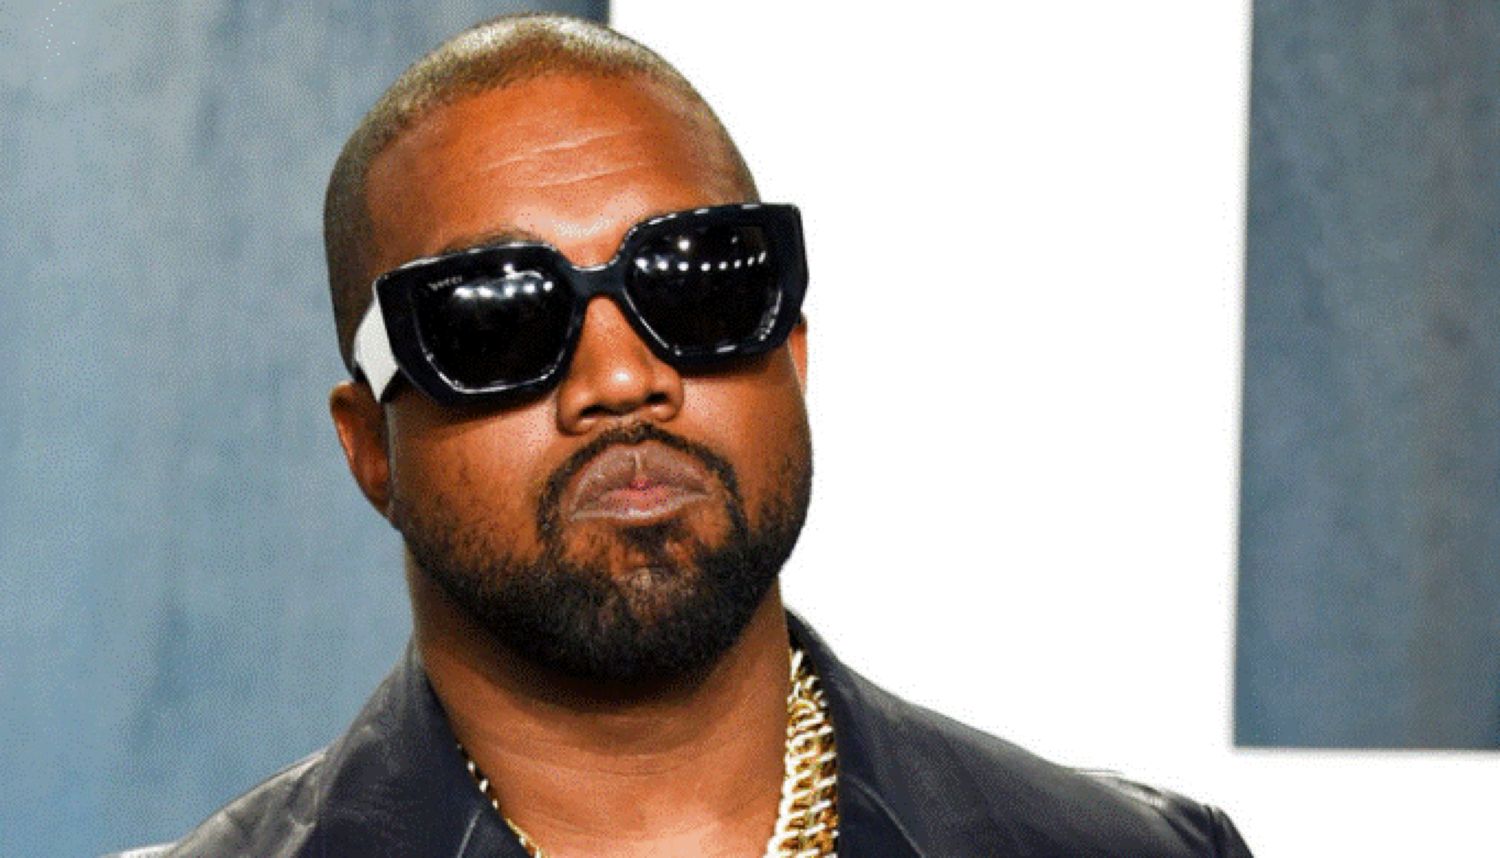 Kanye West și-a lăsat ranch-ul abandonat să se prăbușească. A cumpărat ferma cu 1,7 milioane de lire sterline